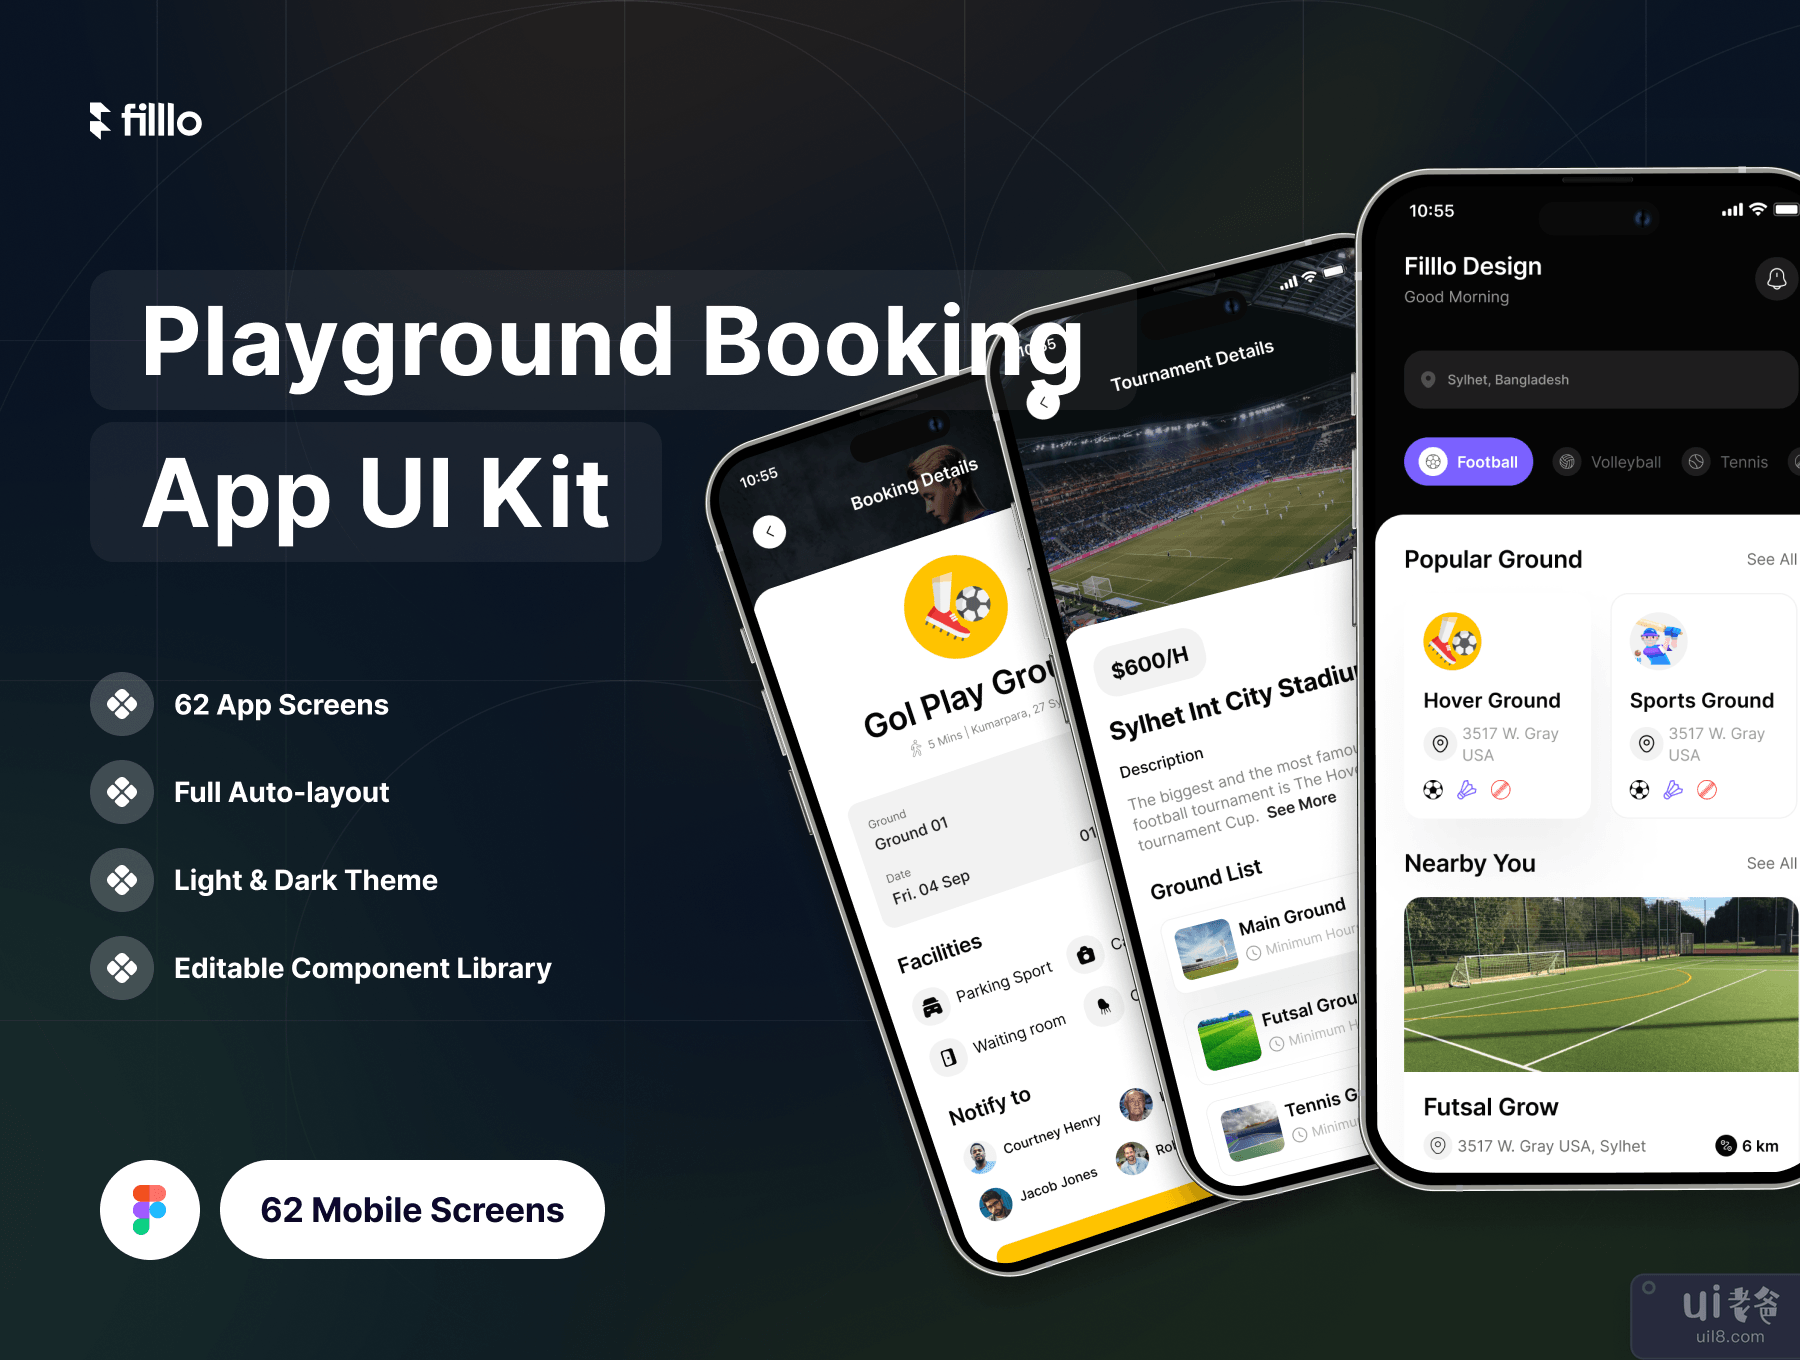 Filllo Playground 预订应用程序 UI 工具包 (Filllo Playground Booking App UI Kit)插图7